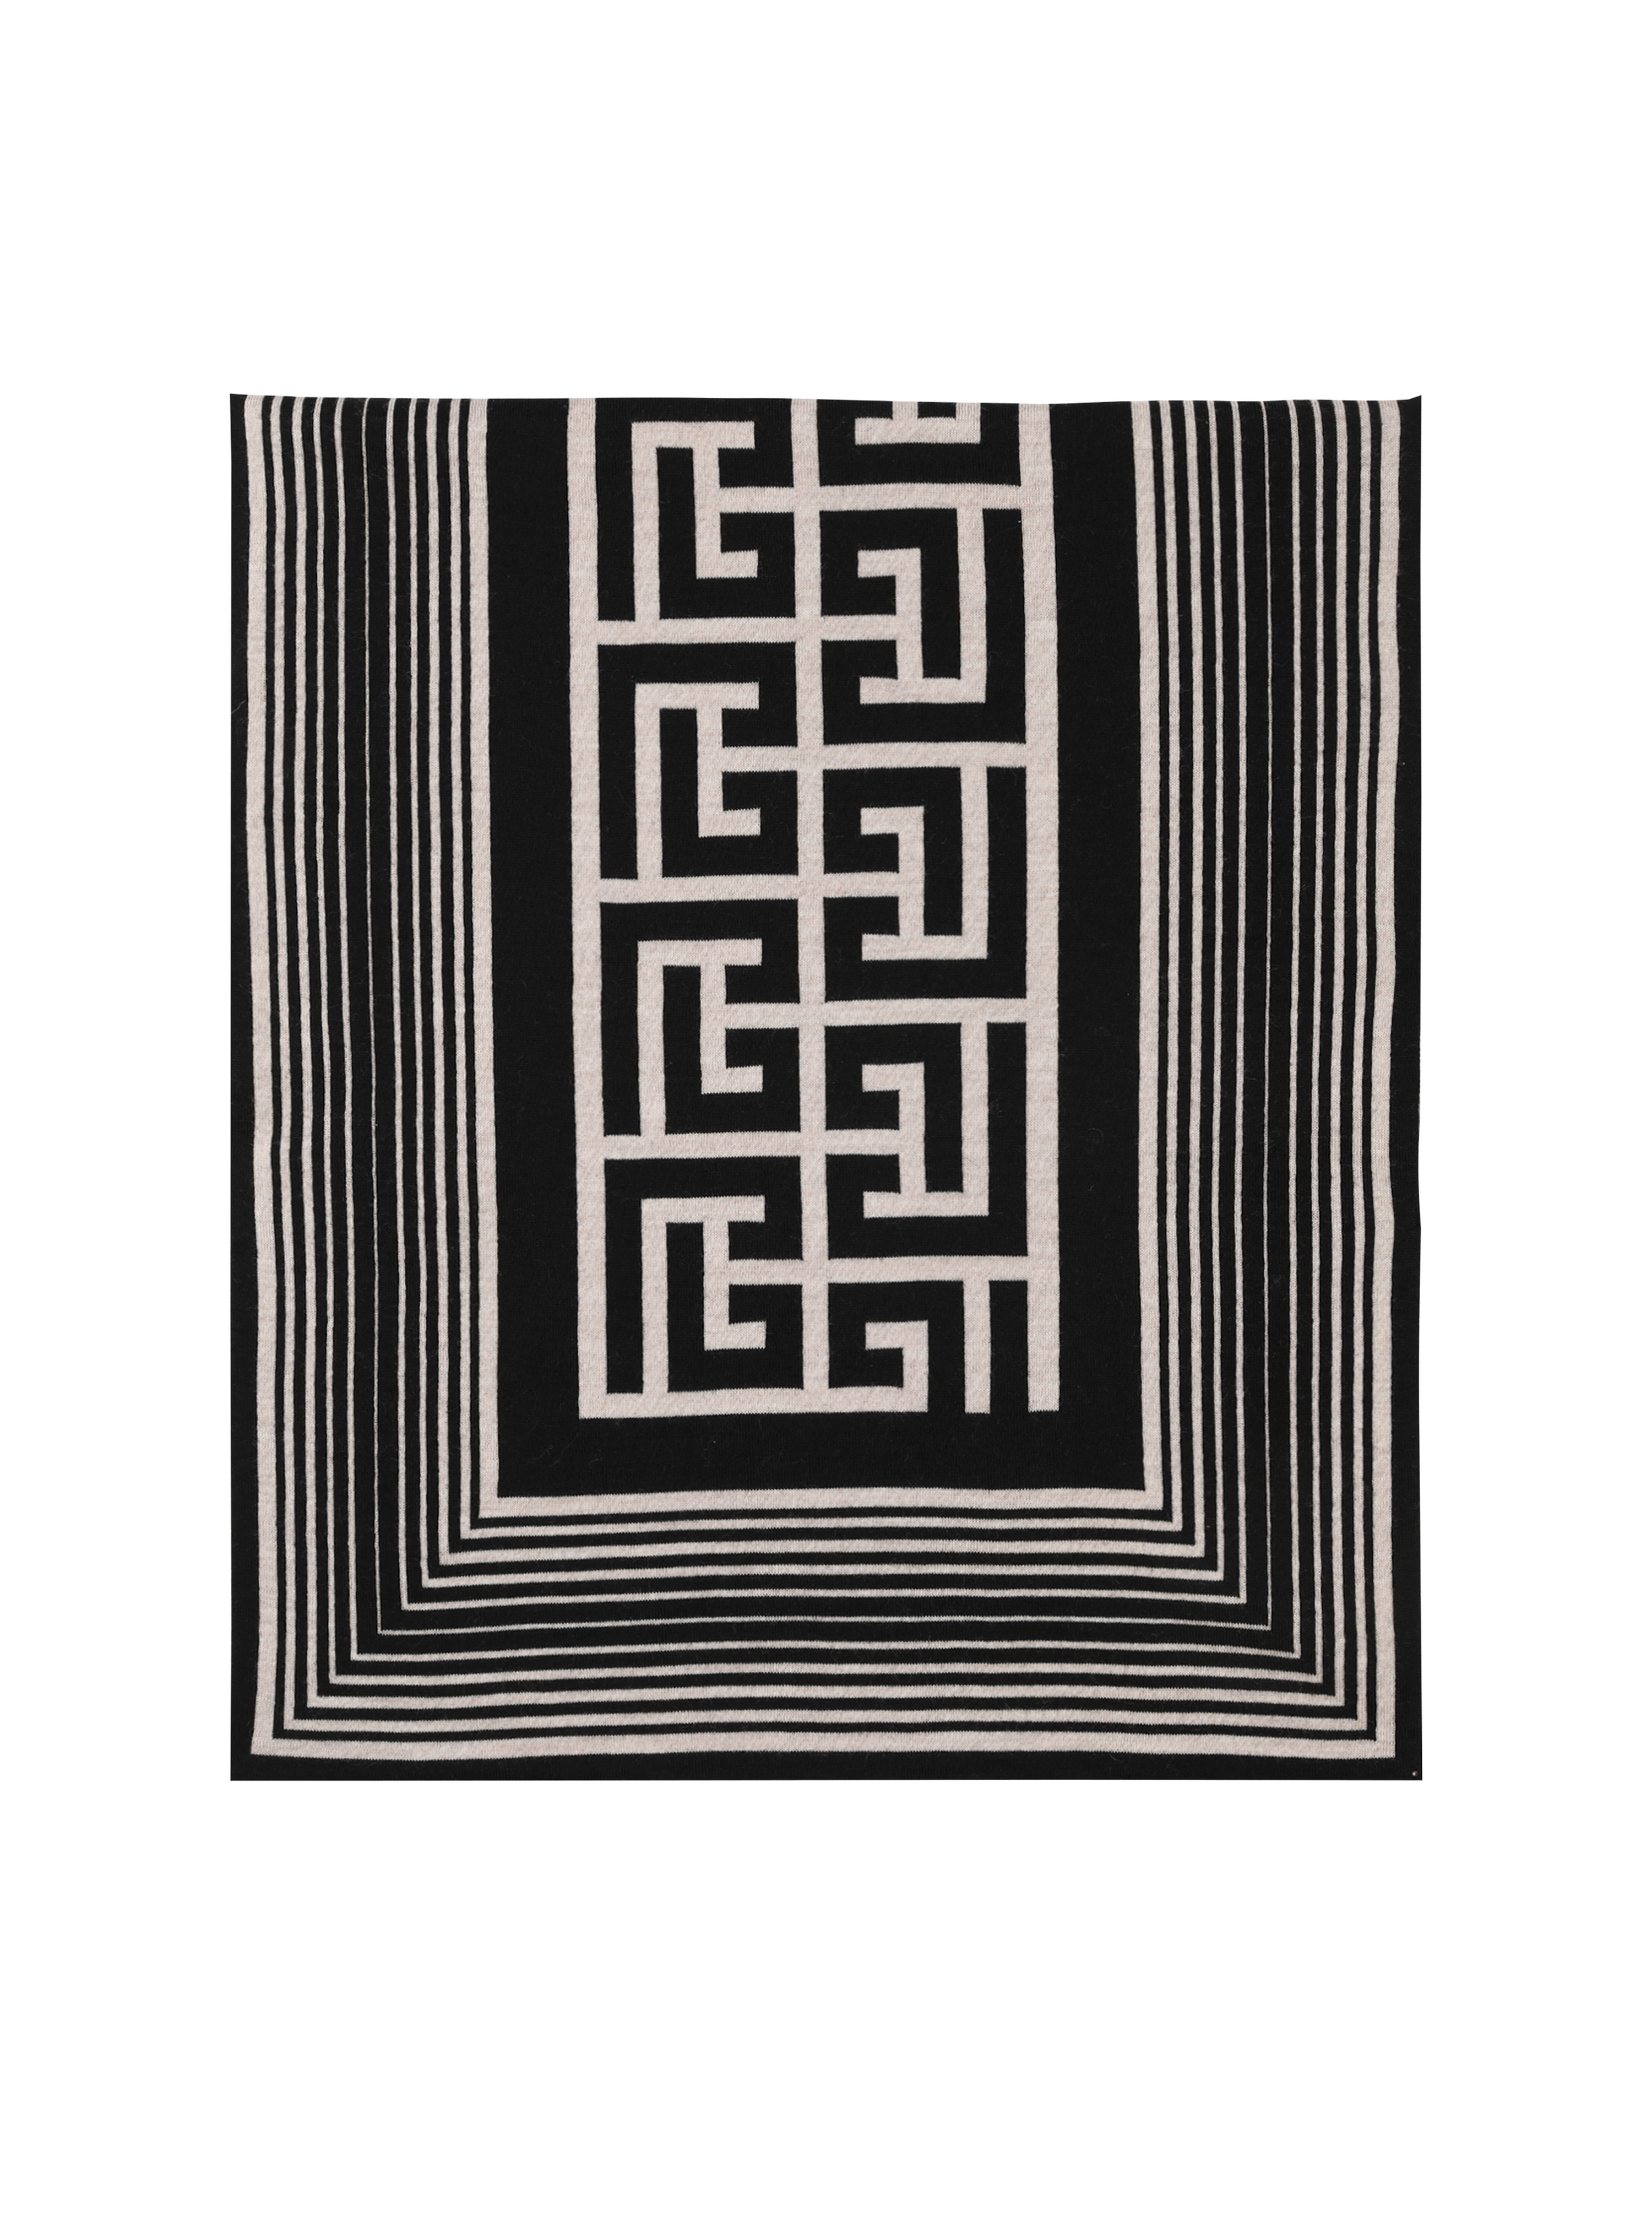 Wool scarf with Balmain monogram pattern, black